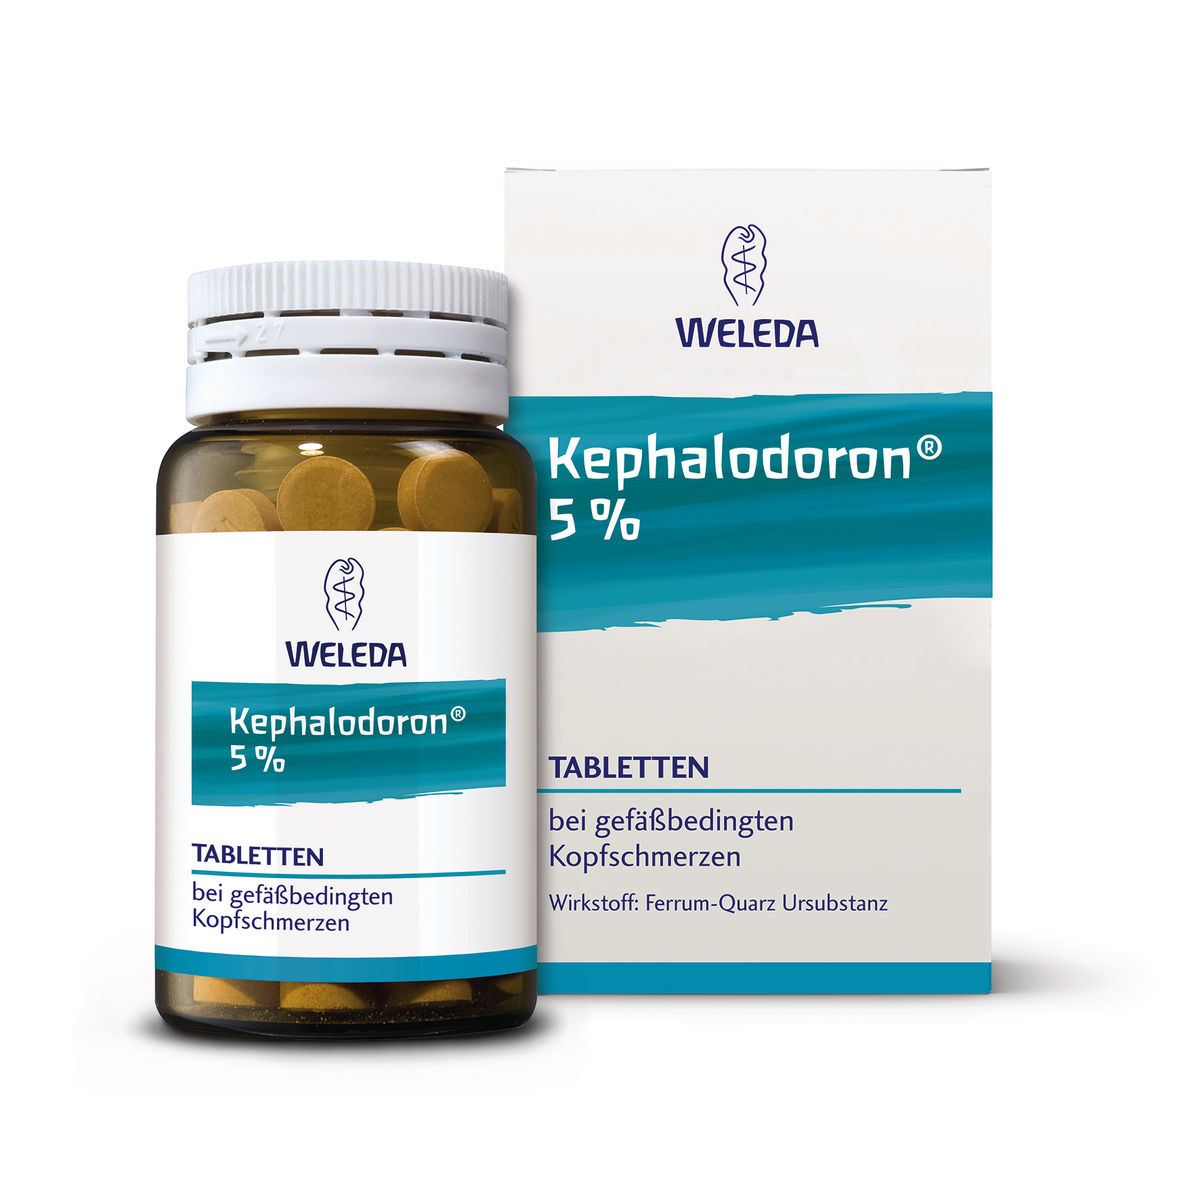 KEPHALODORON 5% Tabletten, 100 St - best-arznei.de